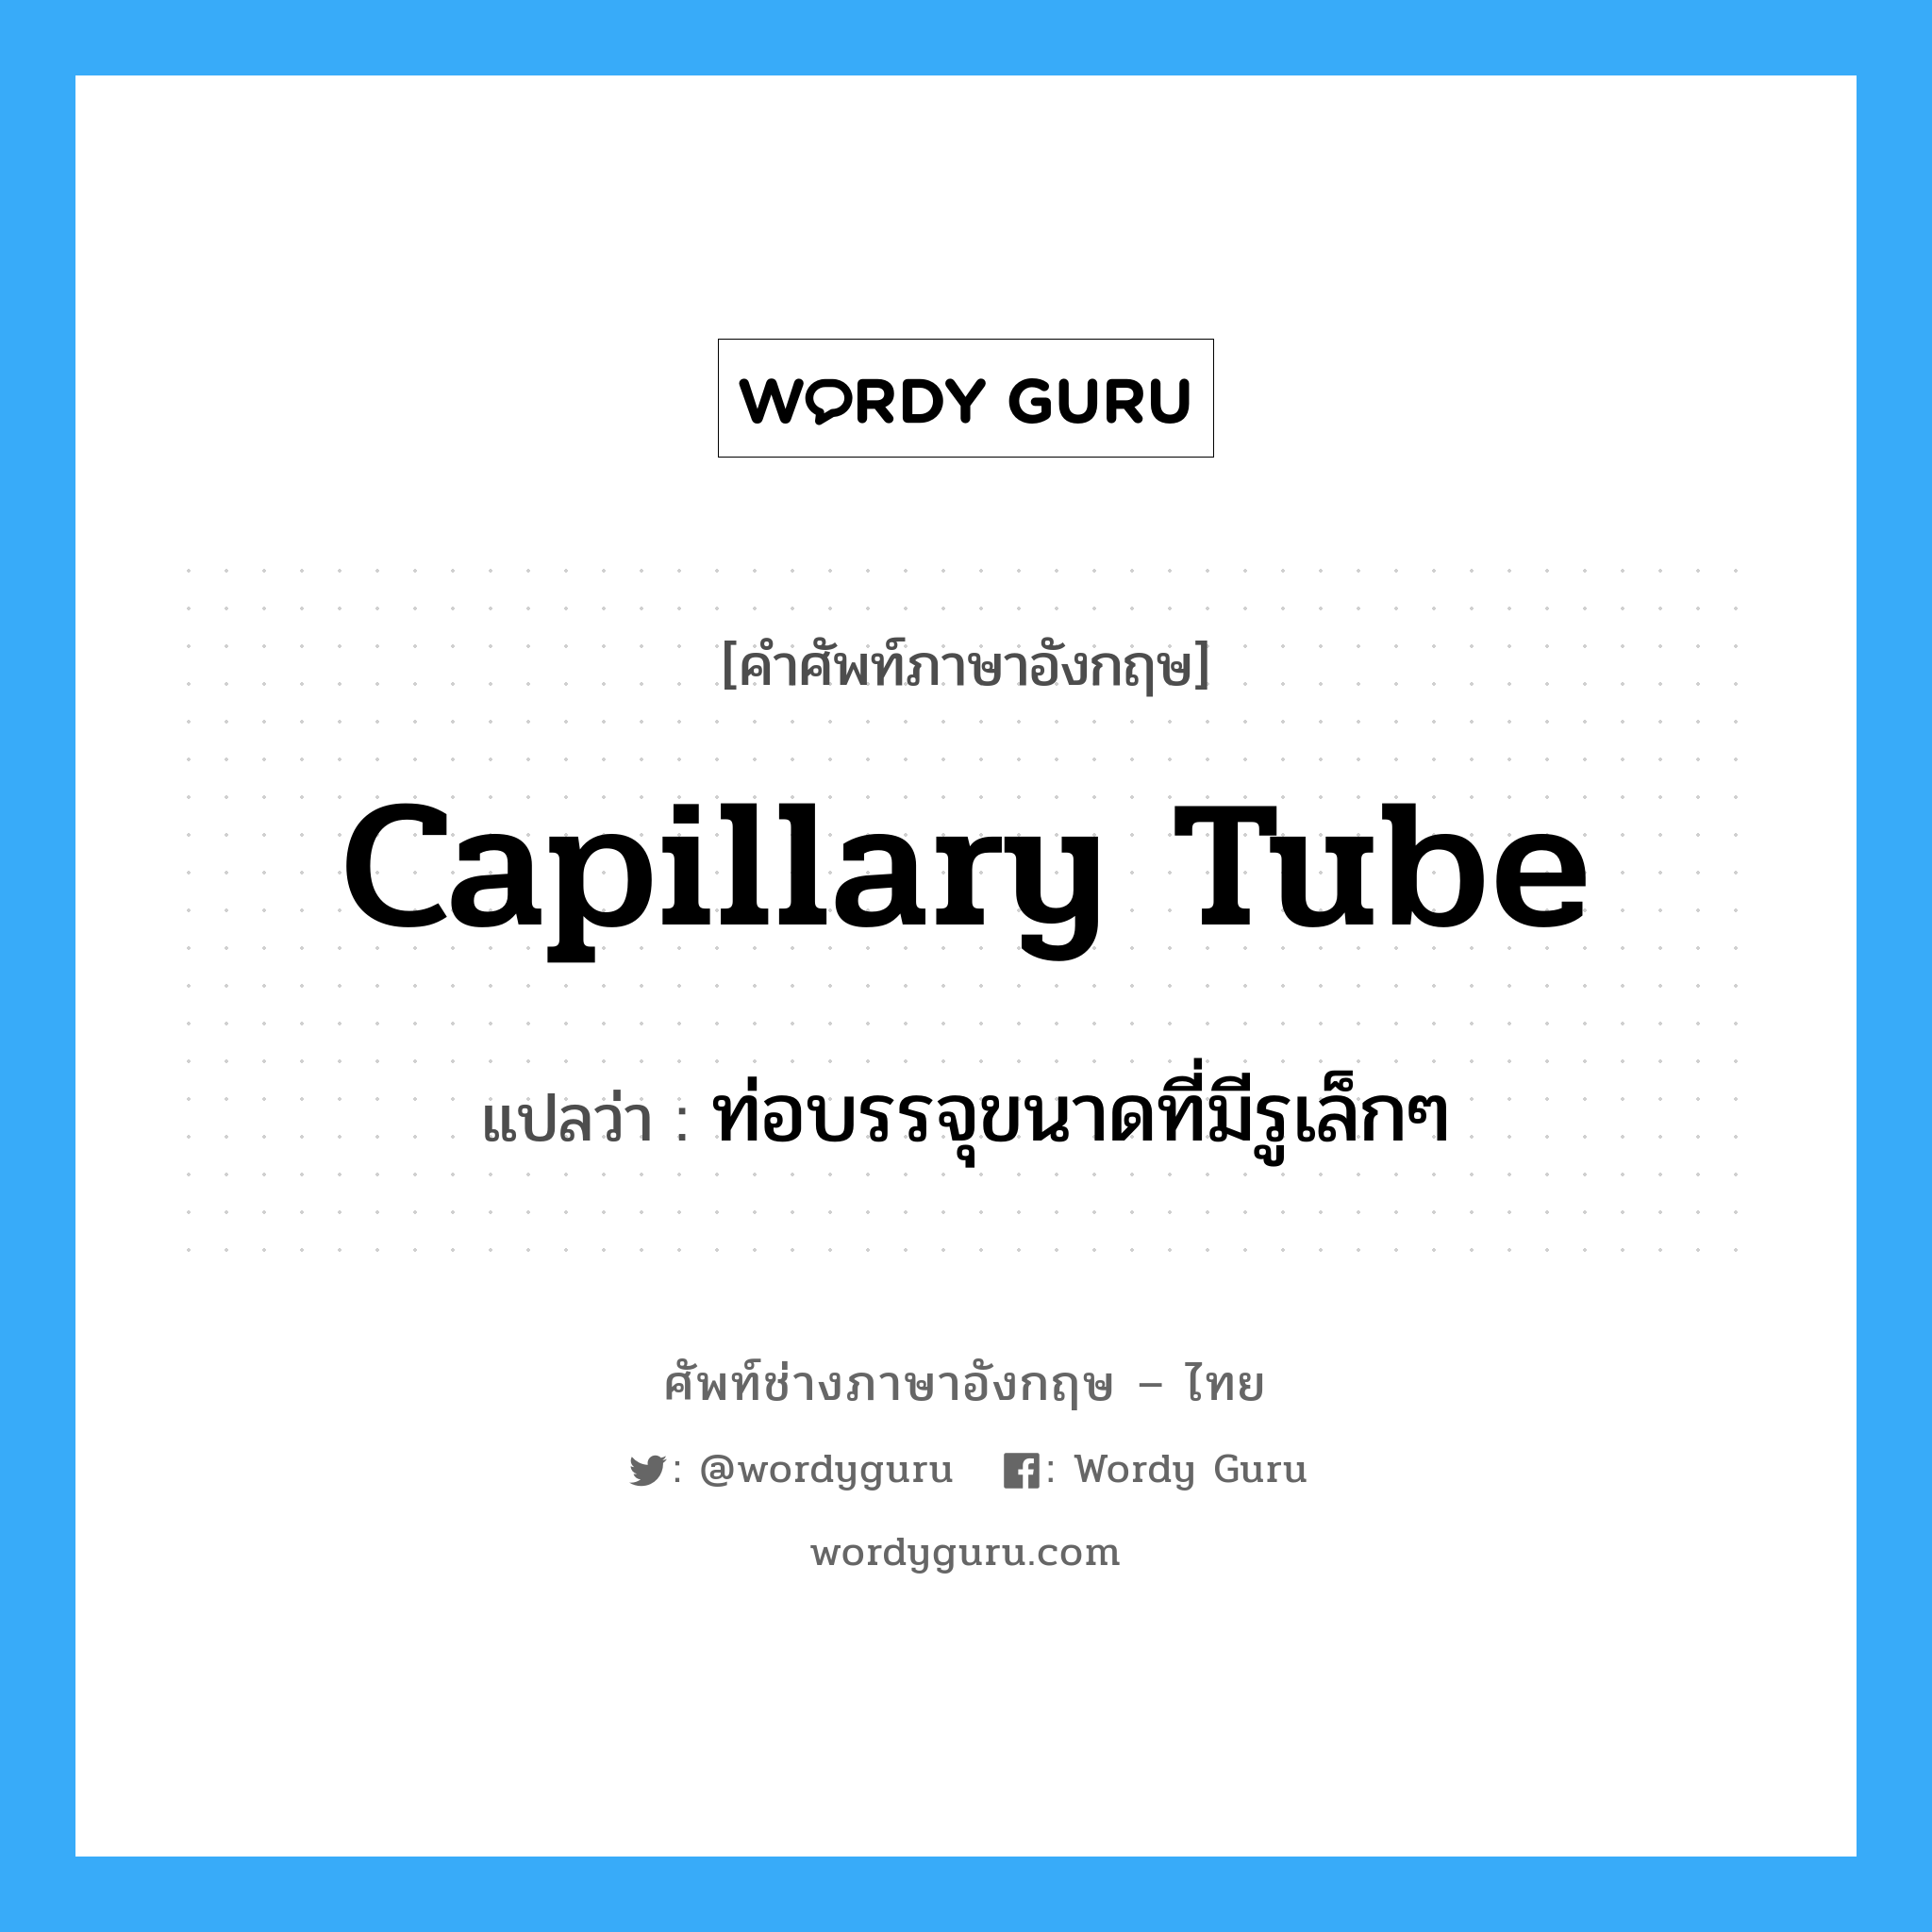 ท่อบรรจุขนาดที่มีรูเล็กๆ ภาษาอังกฤษ?, คำศัพท์ช่างภาษาอังกฤษ - ไทย ท่อบรรจุขนาดที่มีรูเล็กๆ คำศัพท์ภาษาอังกฤษ ท่อบรรจุขนาดที่มีรูเล็กๆ แปลว่า capillary tube